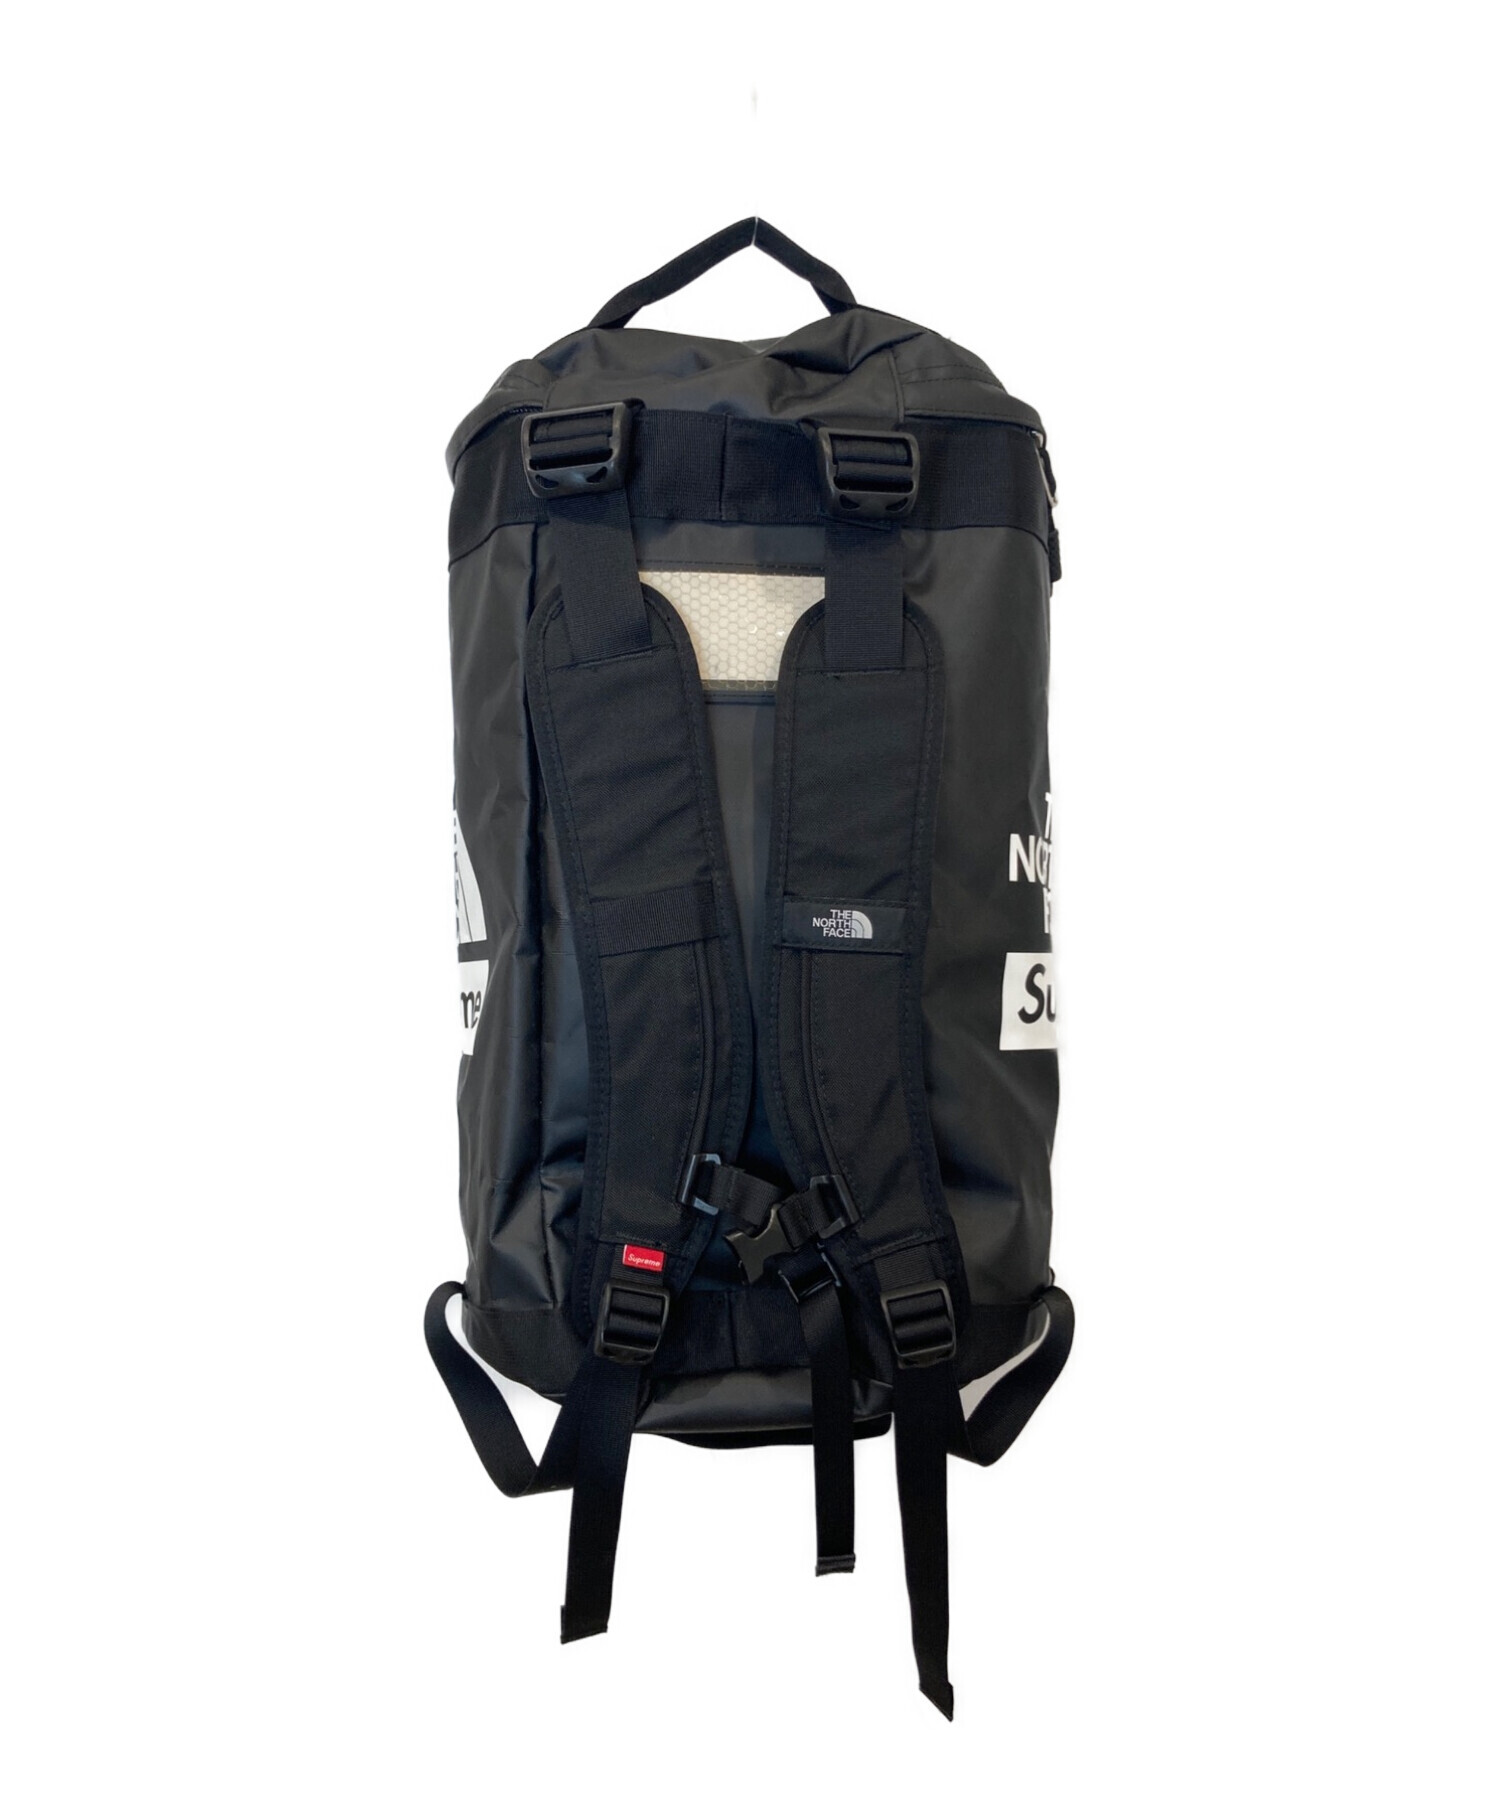 新品 Supreme / The North Face Expedition Backpack 18FW Black